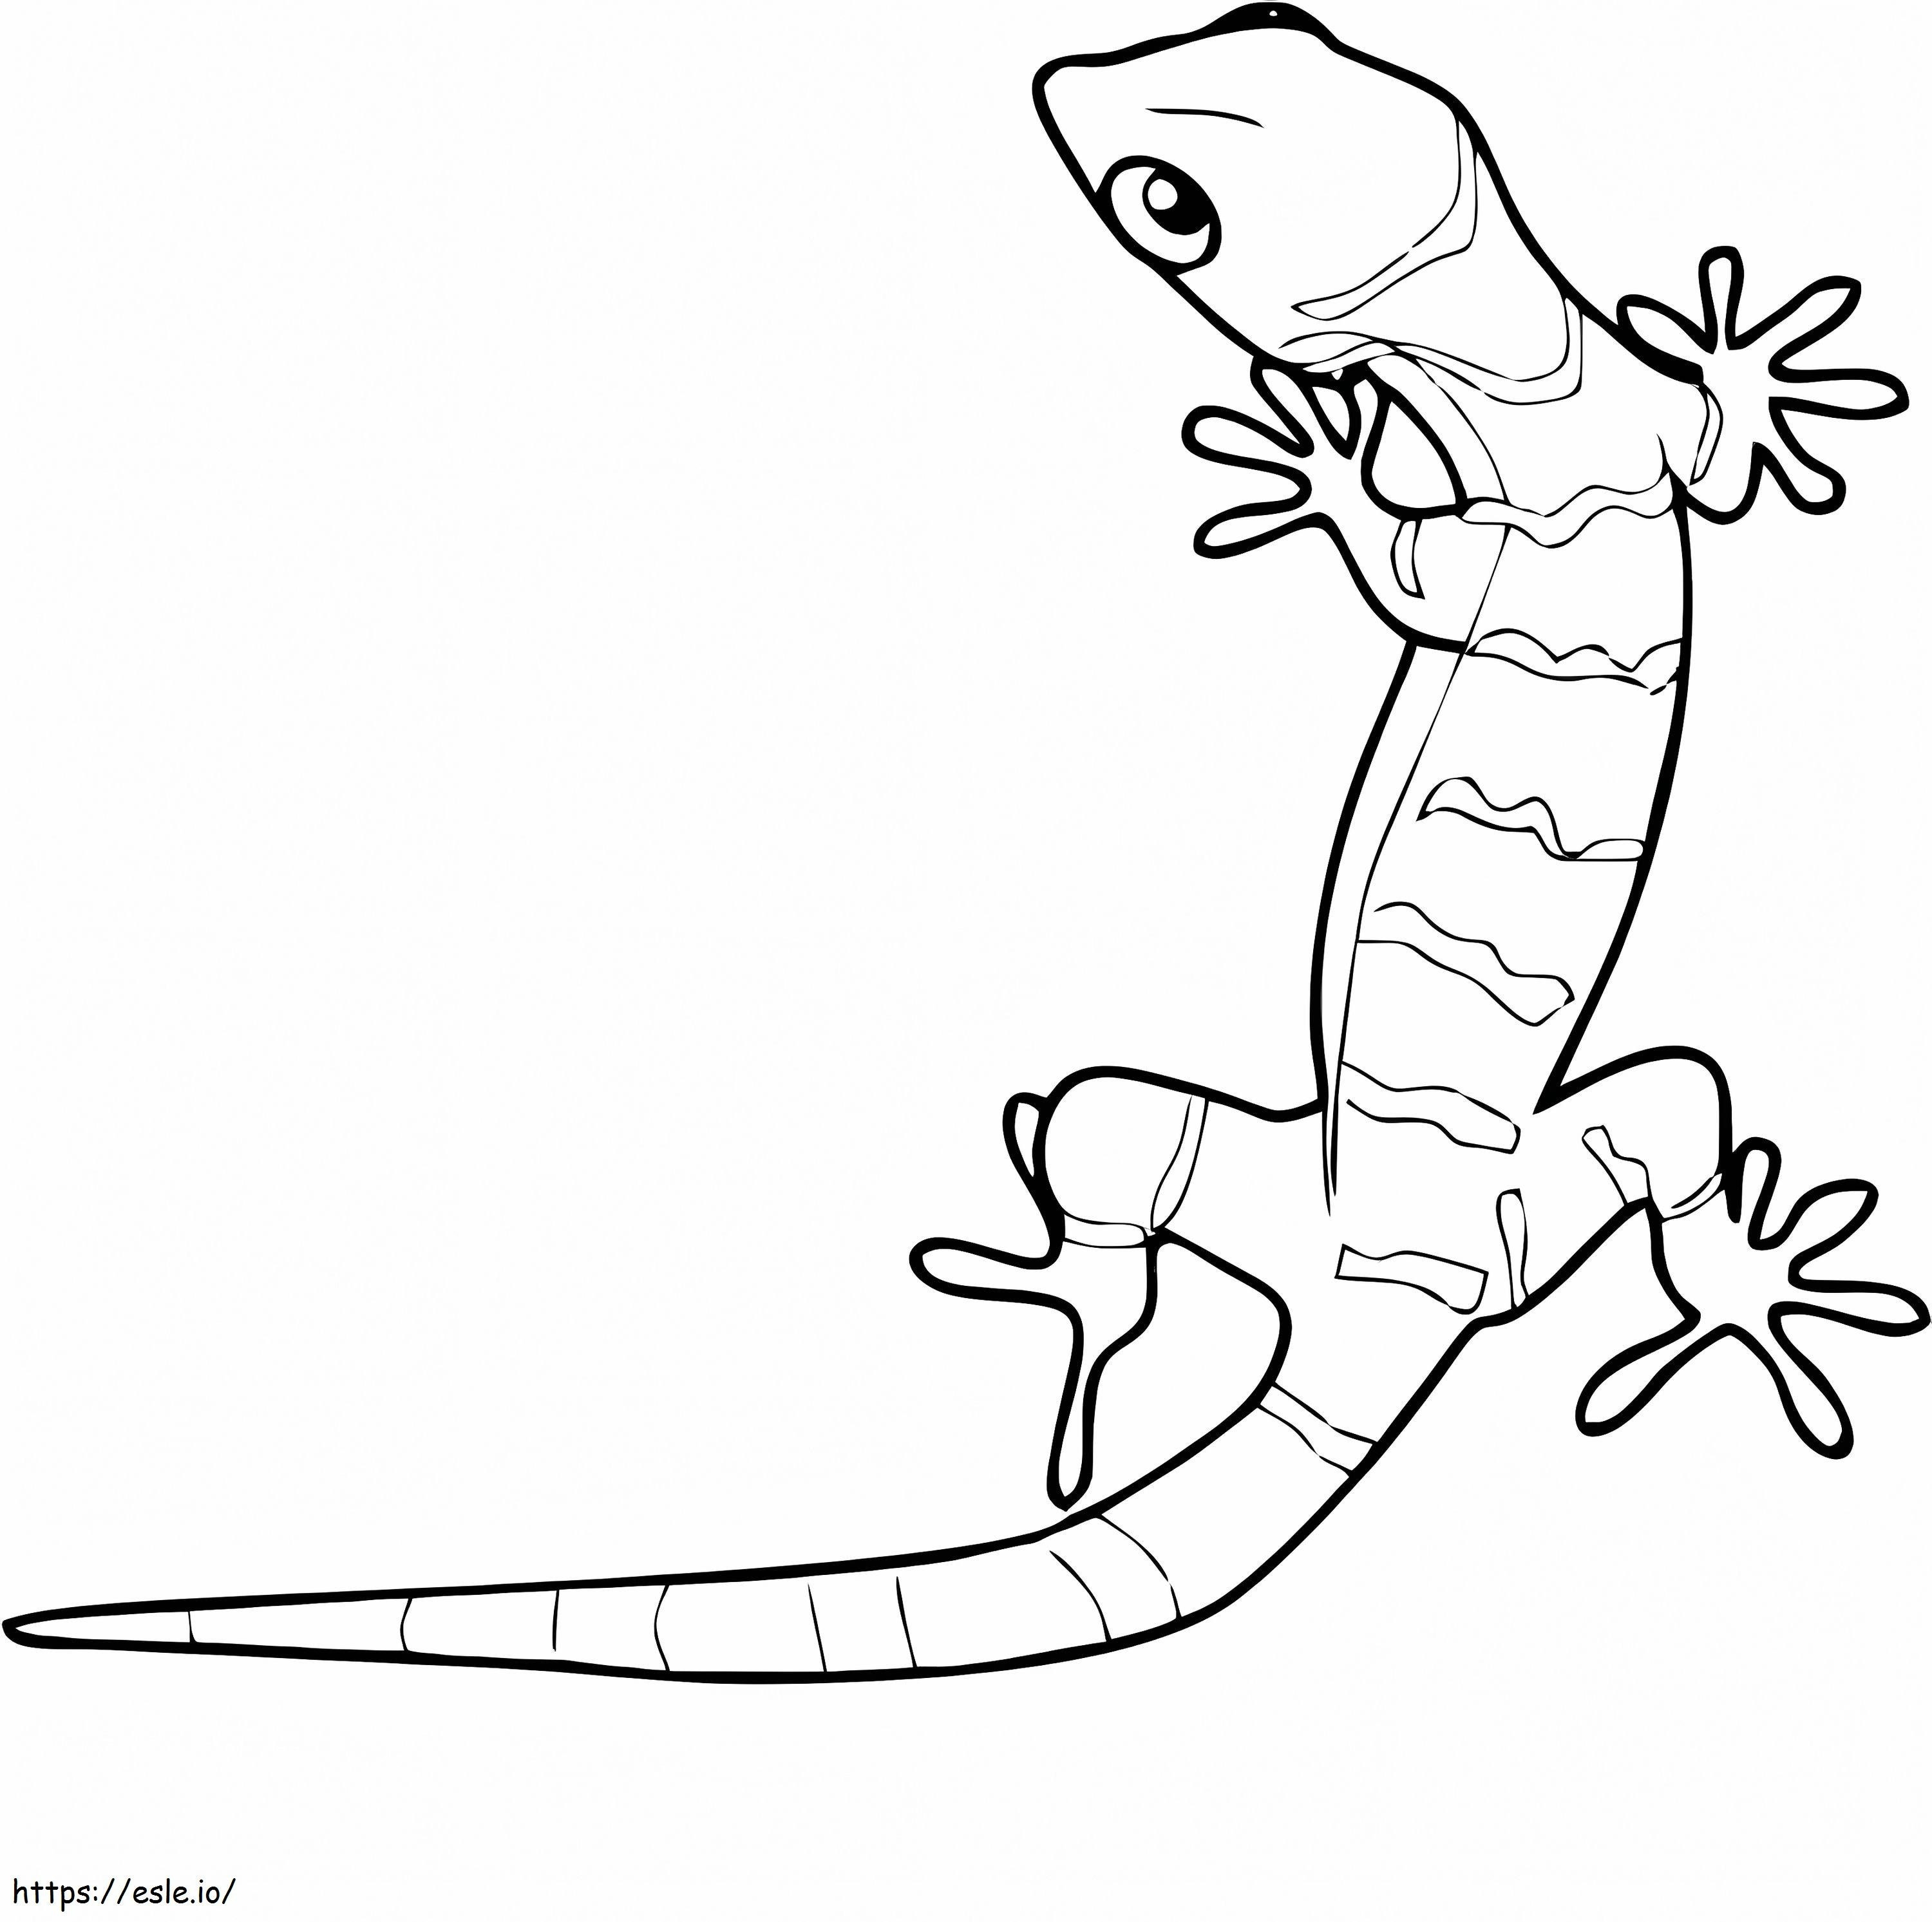 Coloriage Gecko génial à imprimer dessin